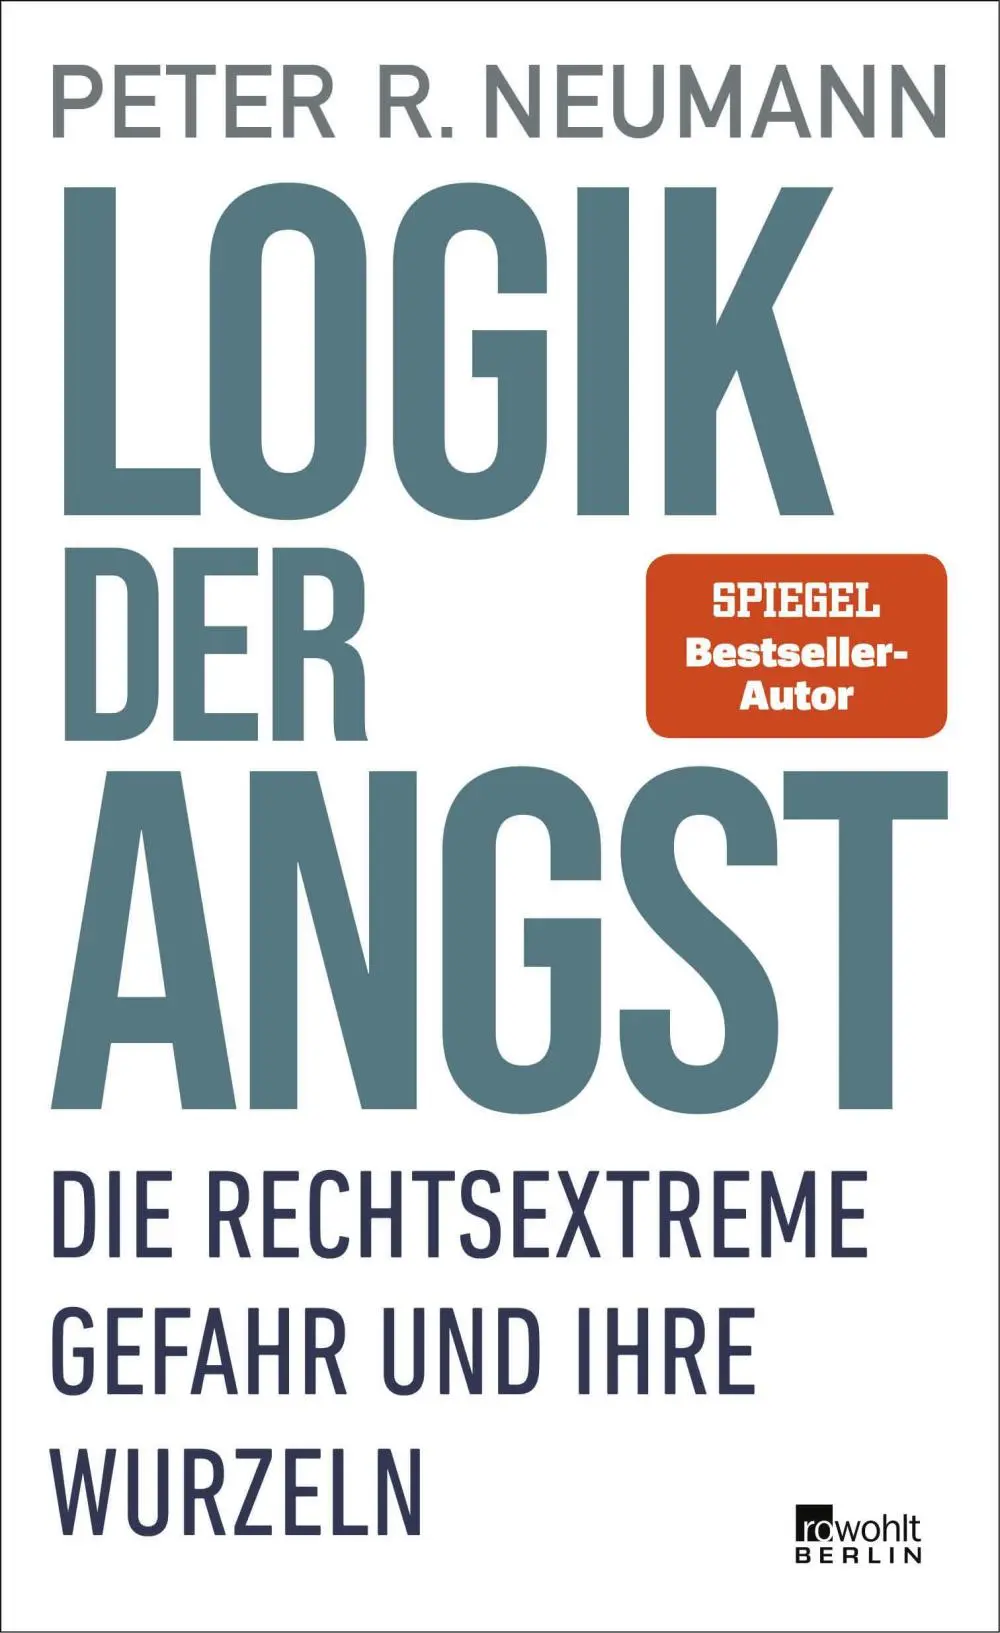 Buchcover: Peter R. Neumann - Logik der Angst.